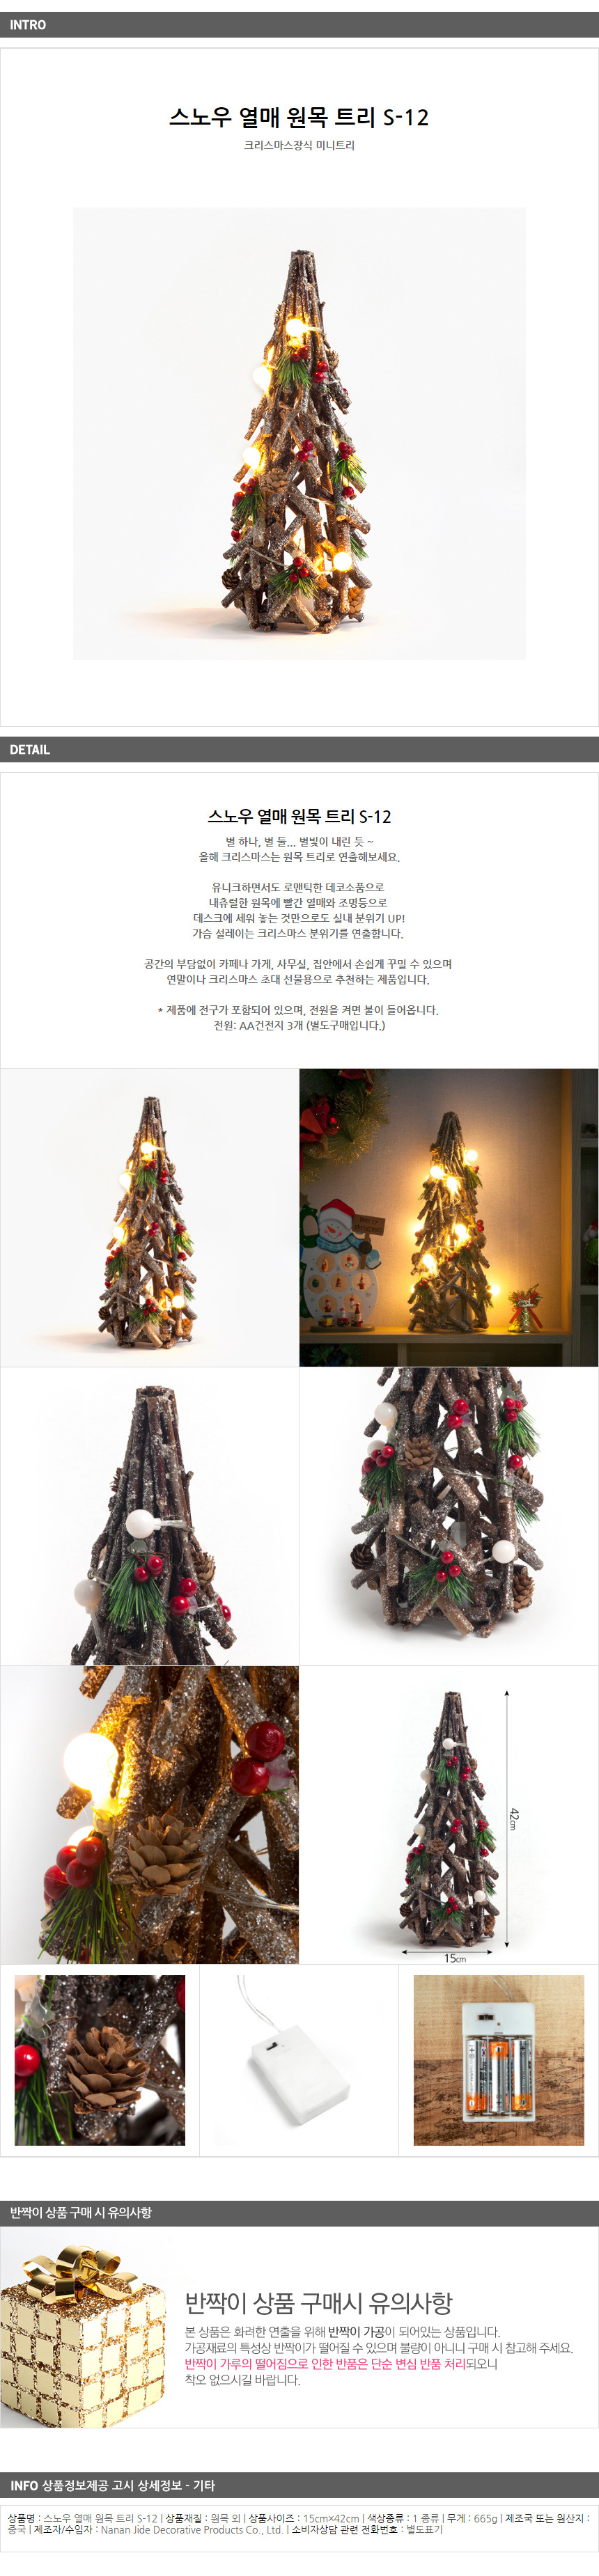 크리스마스장식 원목트리 성탄 트리나무 42cm